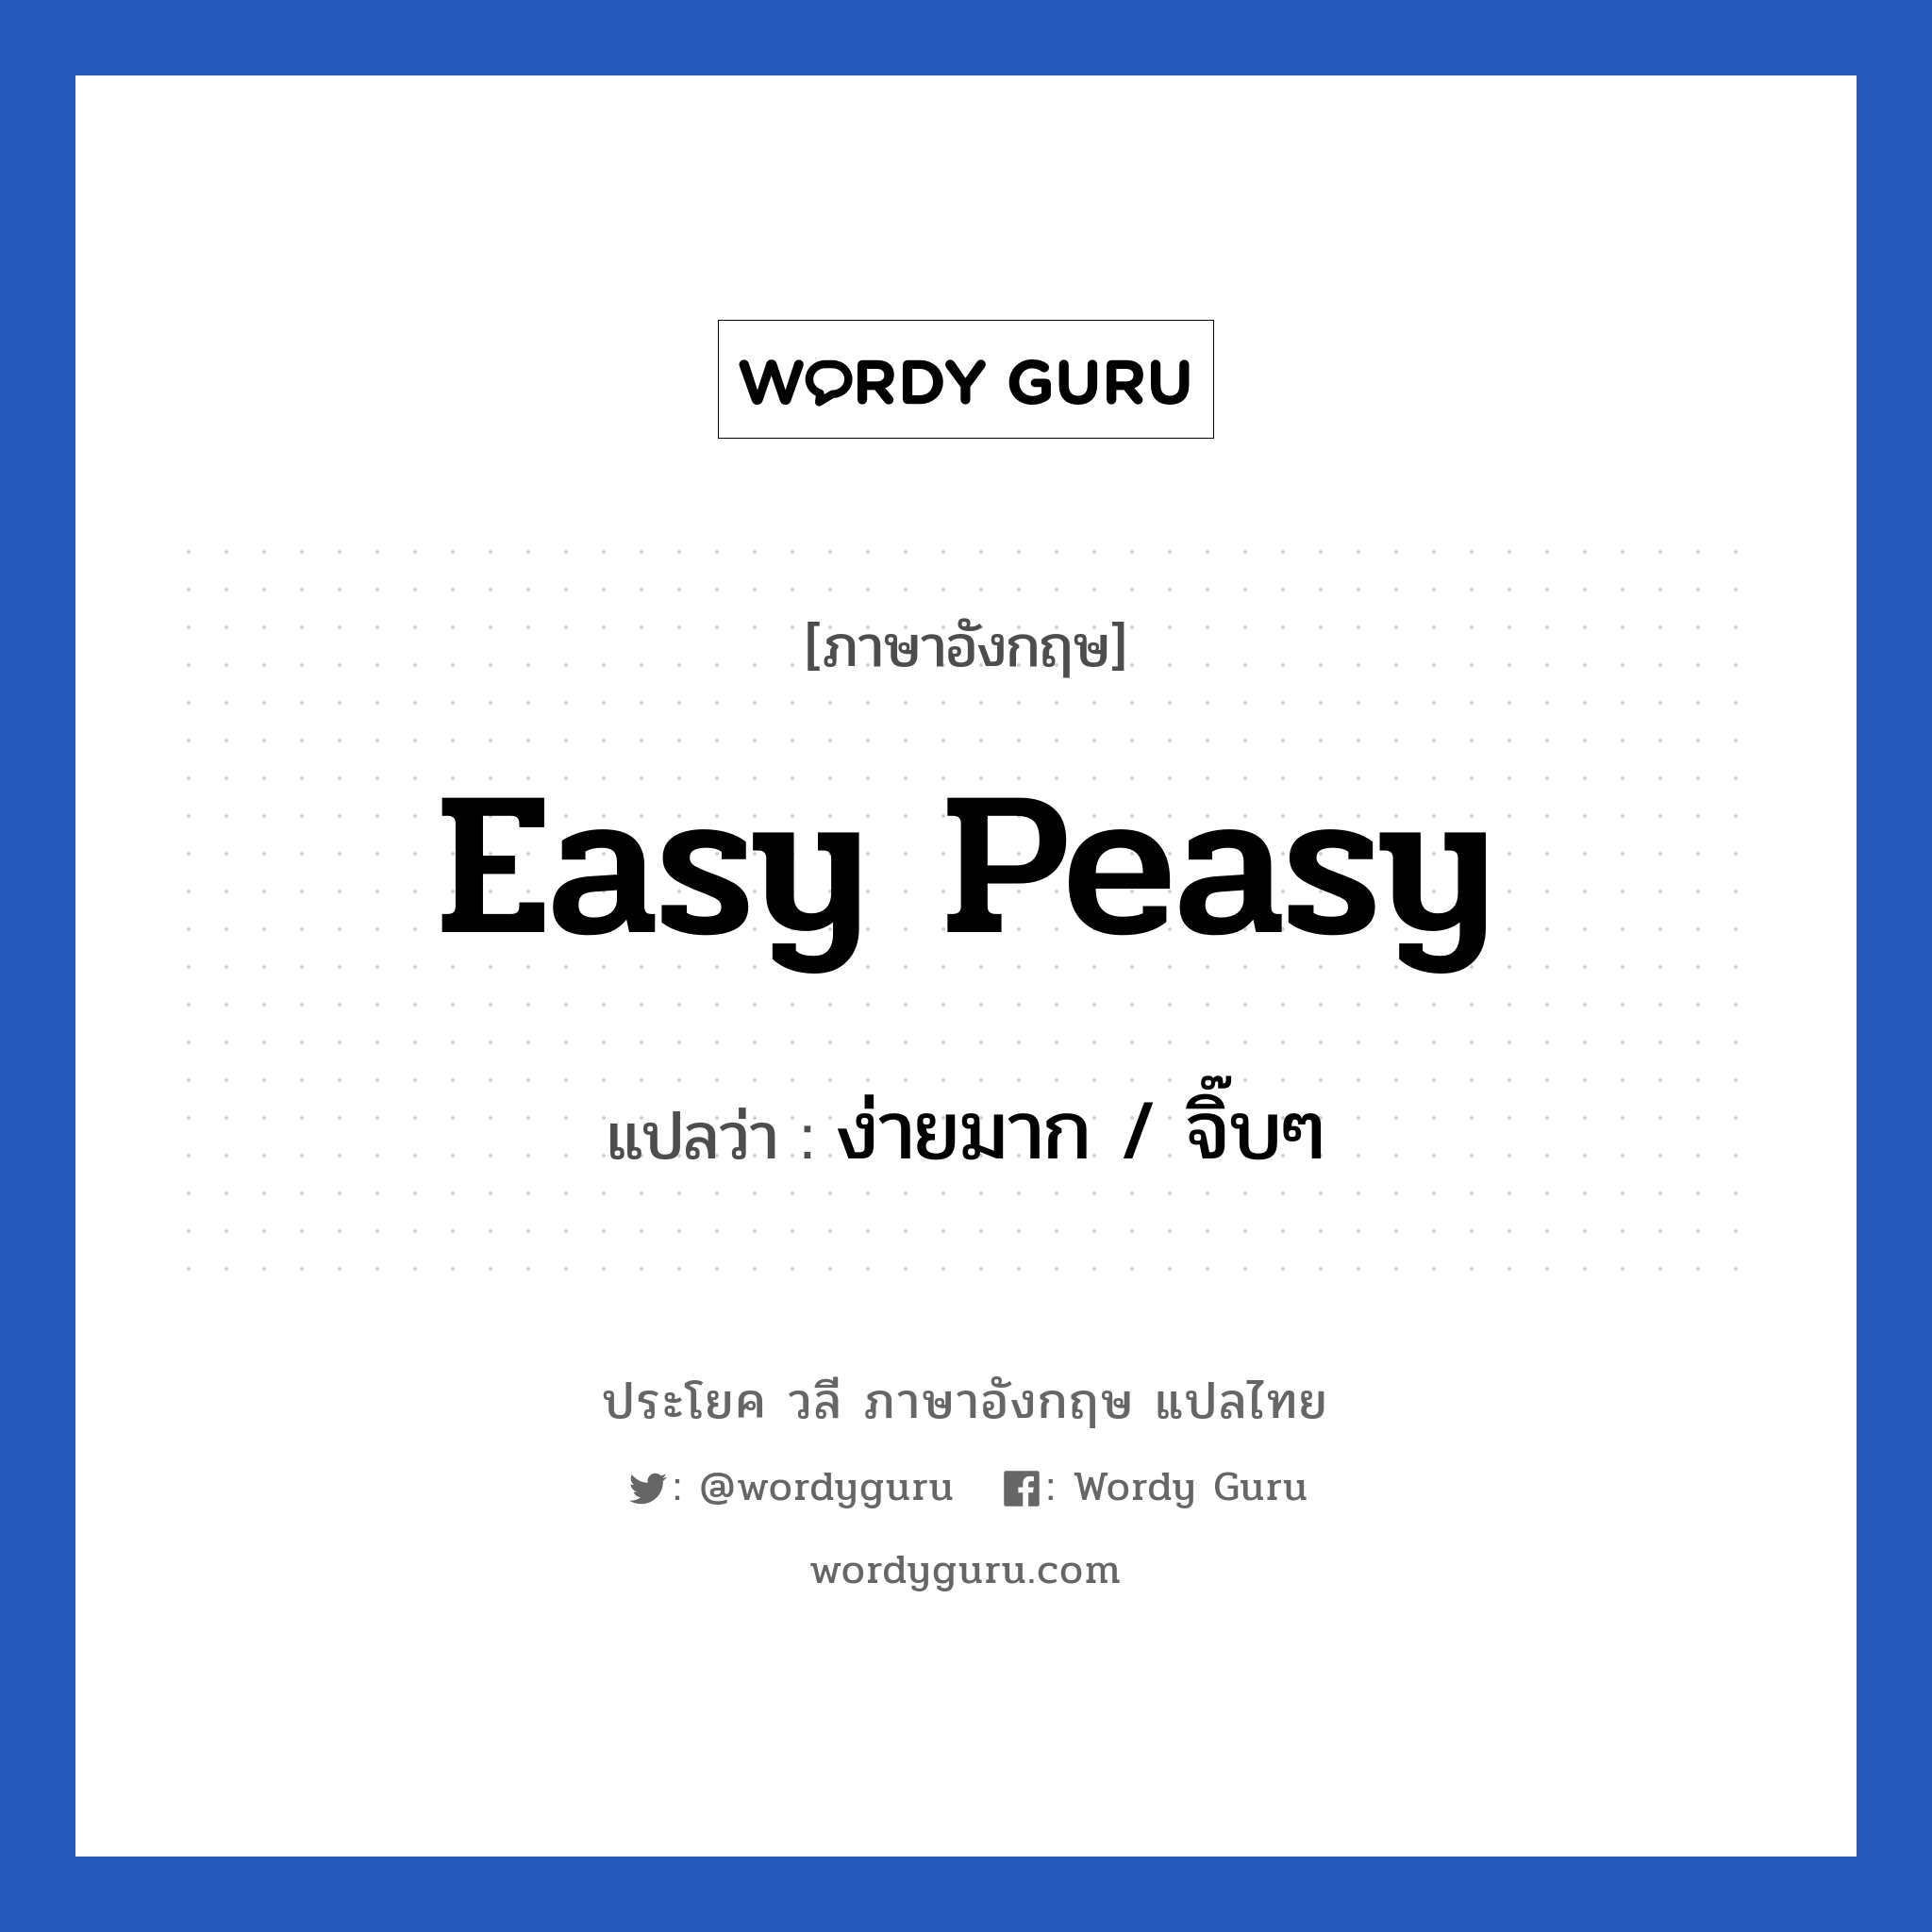 ง่ายมาก / จิ๊บๆ ภาษาอังกฤษ?, วลีภาษาอังกฤษ ง่ายมาก / จิ๊บๆ แปลว่า Easy peasy